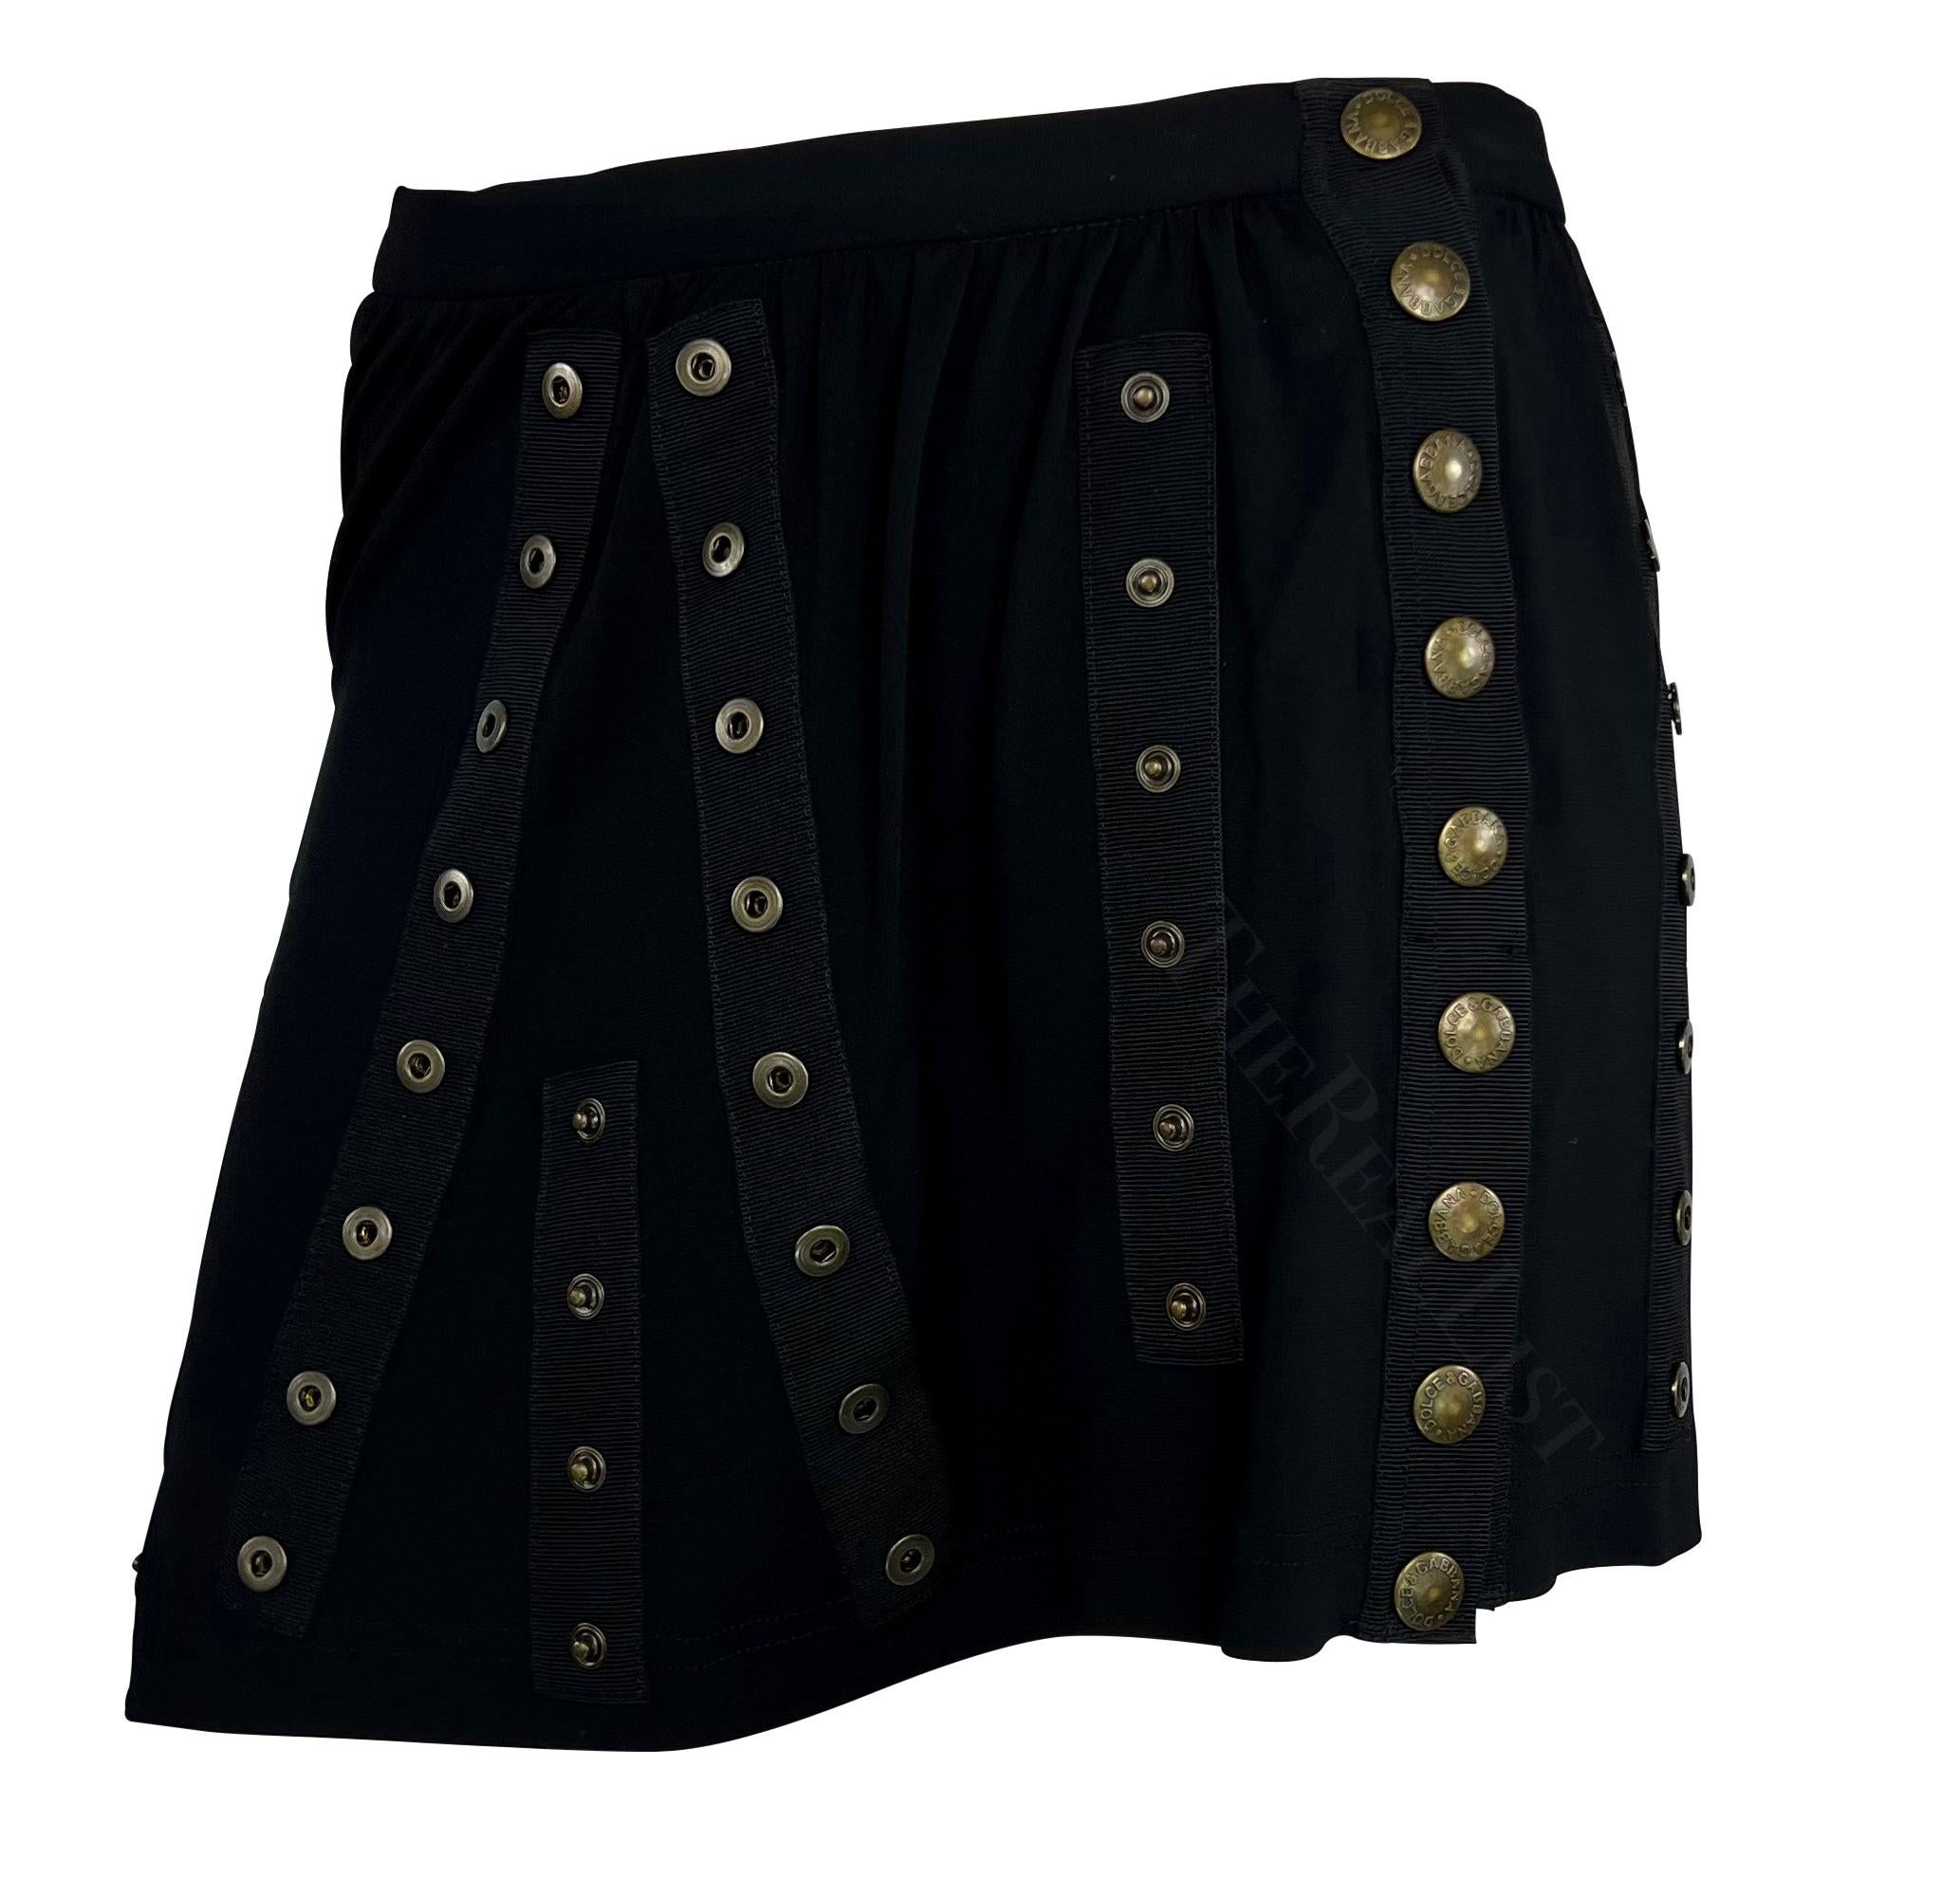 Présentation d'une fabuleuse mini-jupe noire à boutons-pression Dolce and Gabbana. Issue de la collection printemps/été 2003 